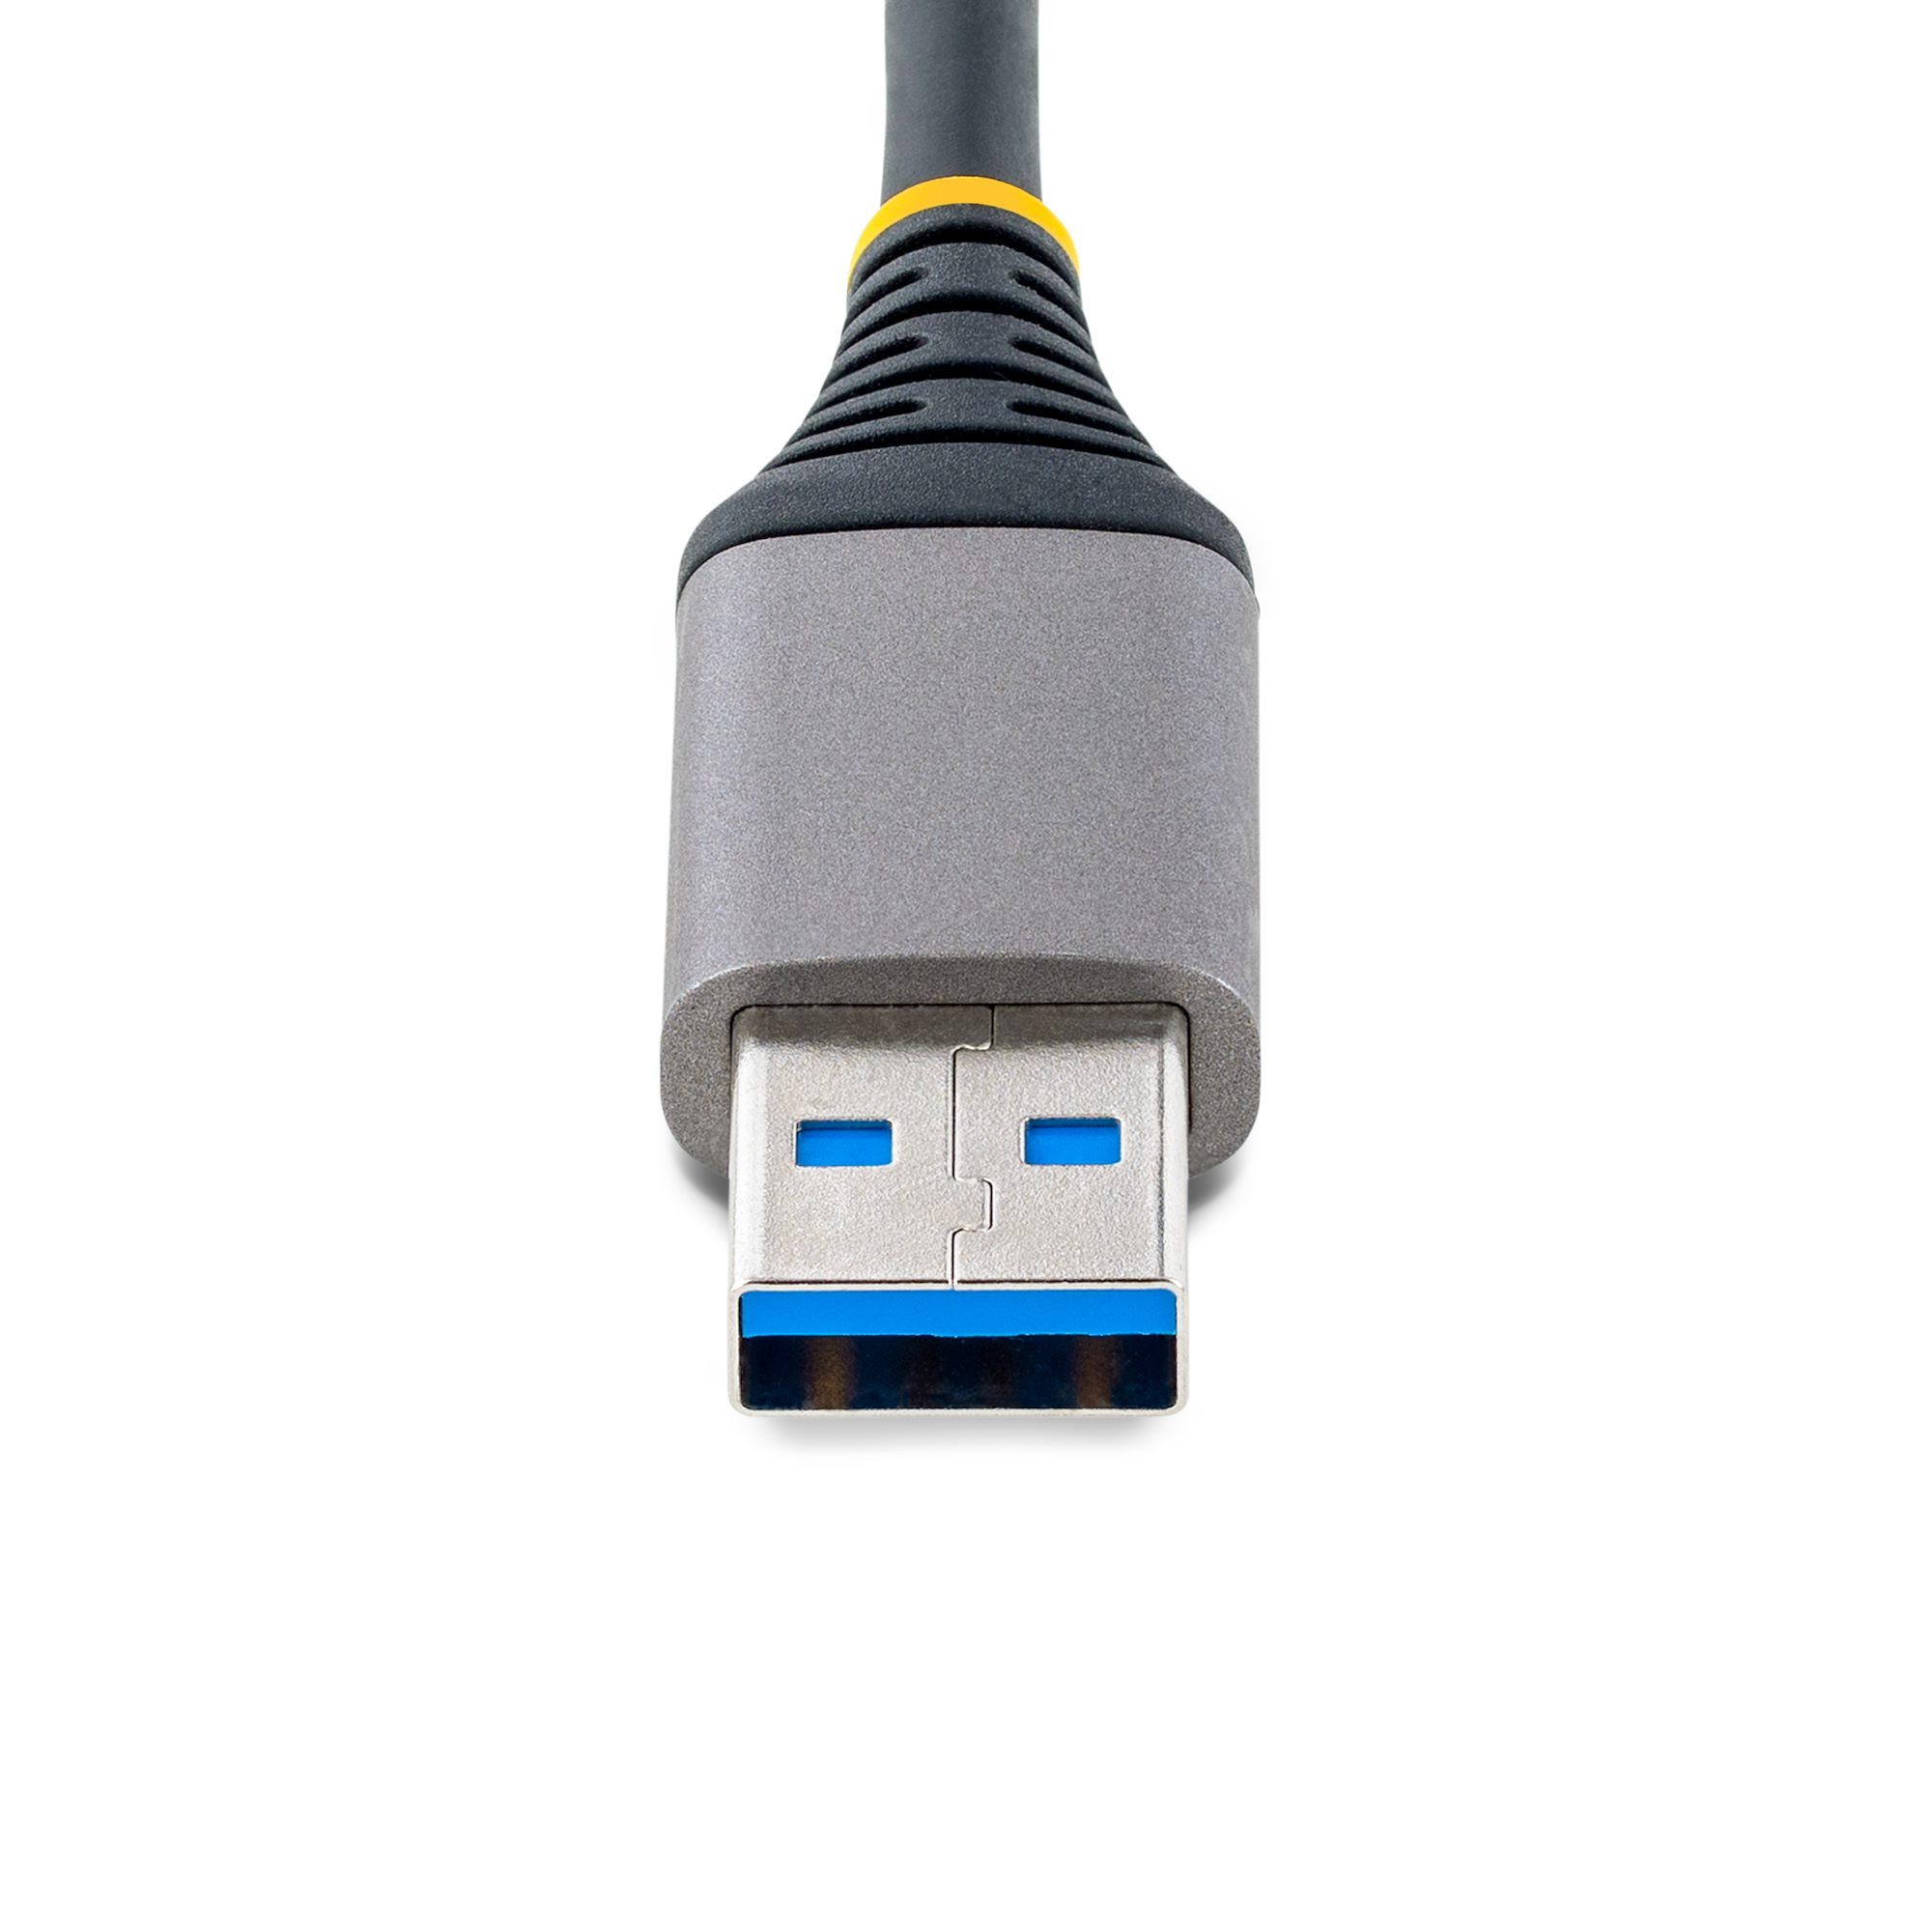 Hoppac Hub USB 3.0,4 en 1 Multiprise USB avec Lumière LED, Port USB  Multiple pour PC avec 1USB 3.0 Et 3USB 2.0,USB Multiple Ports pour Le  Transfert De Données et La Recharge,Interrupteur